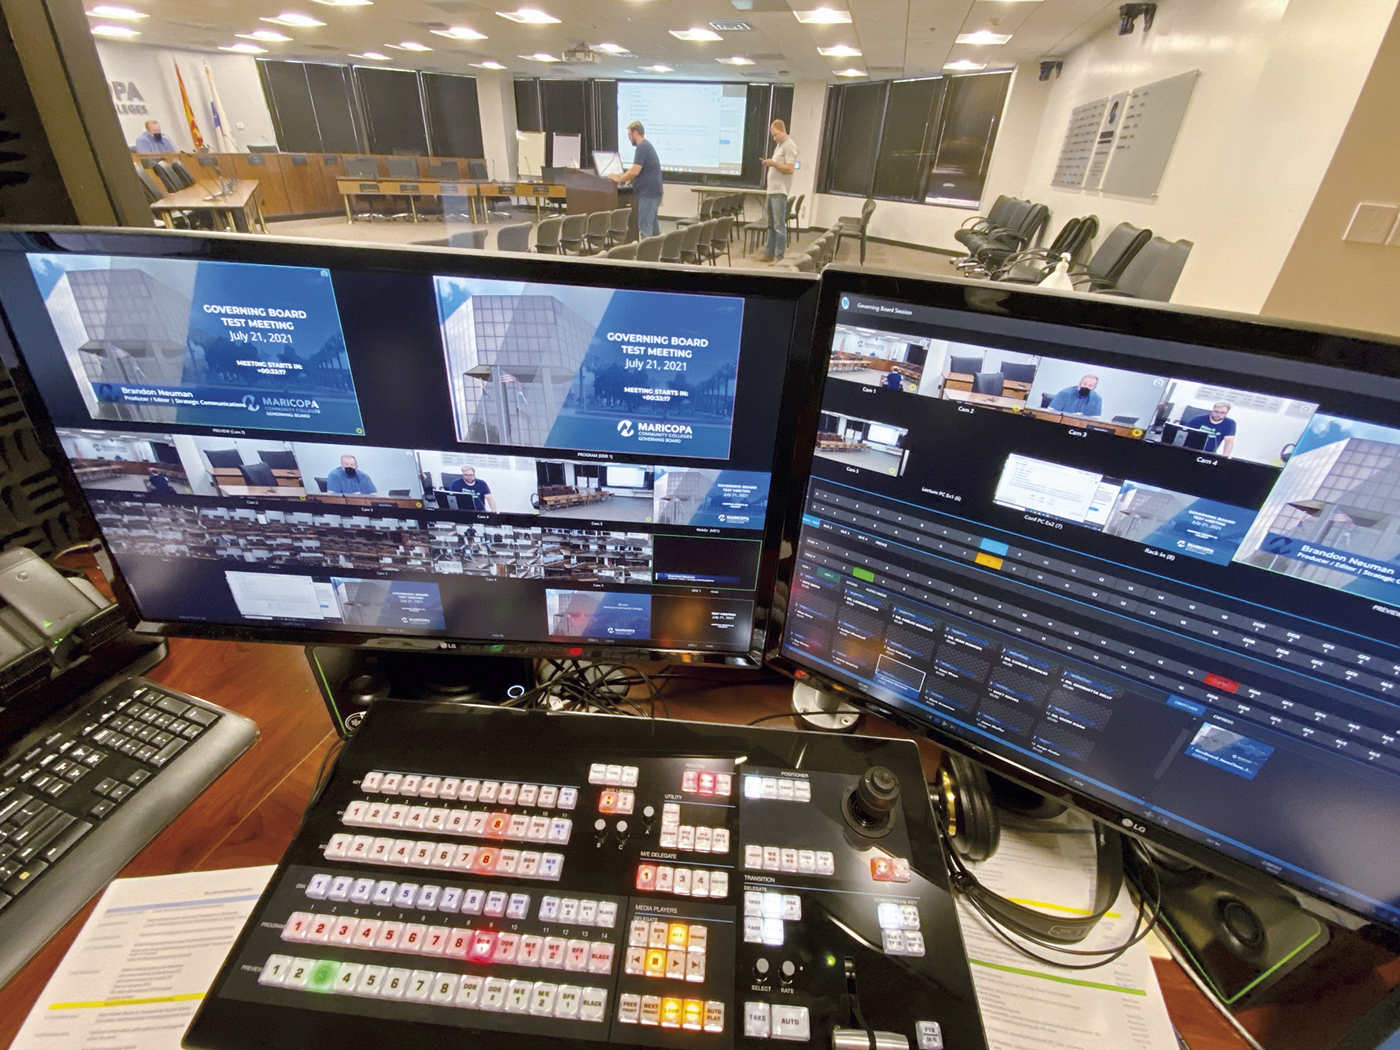 Im benachbarten Technikraum kann der MCCCD-Anlagenbediener das DTP-System überwachen und bedienen, um das Streaming und die Aufzeichnung zu erleichtern sowie die Verfügbarkeit der Einspeisungen und AV-Inhalte für die Fernsehübertragungen zu verwalten.